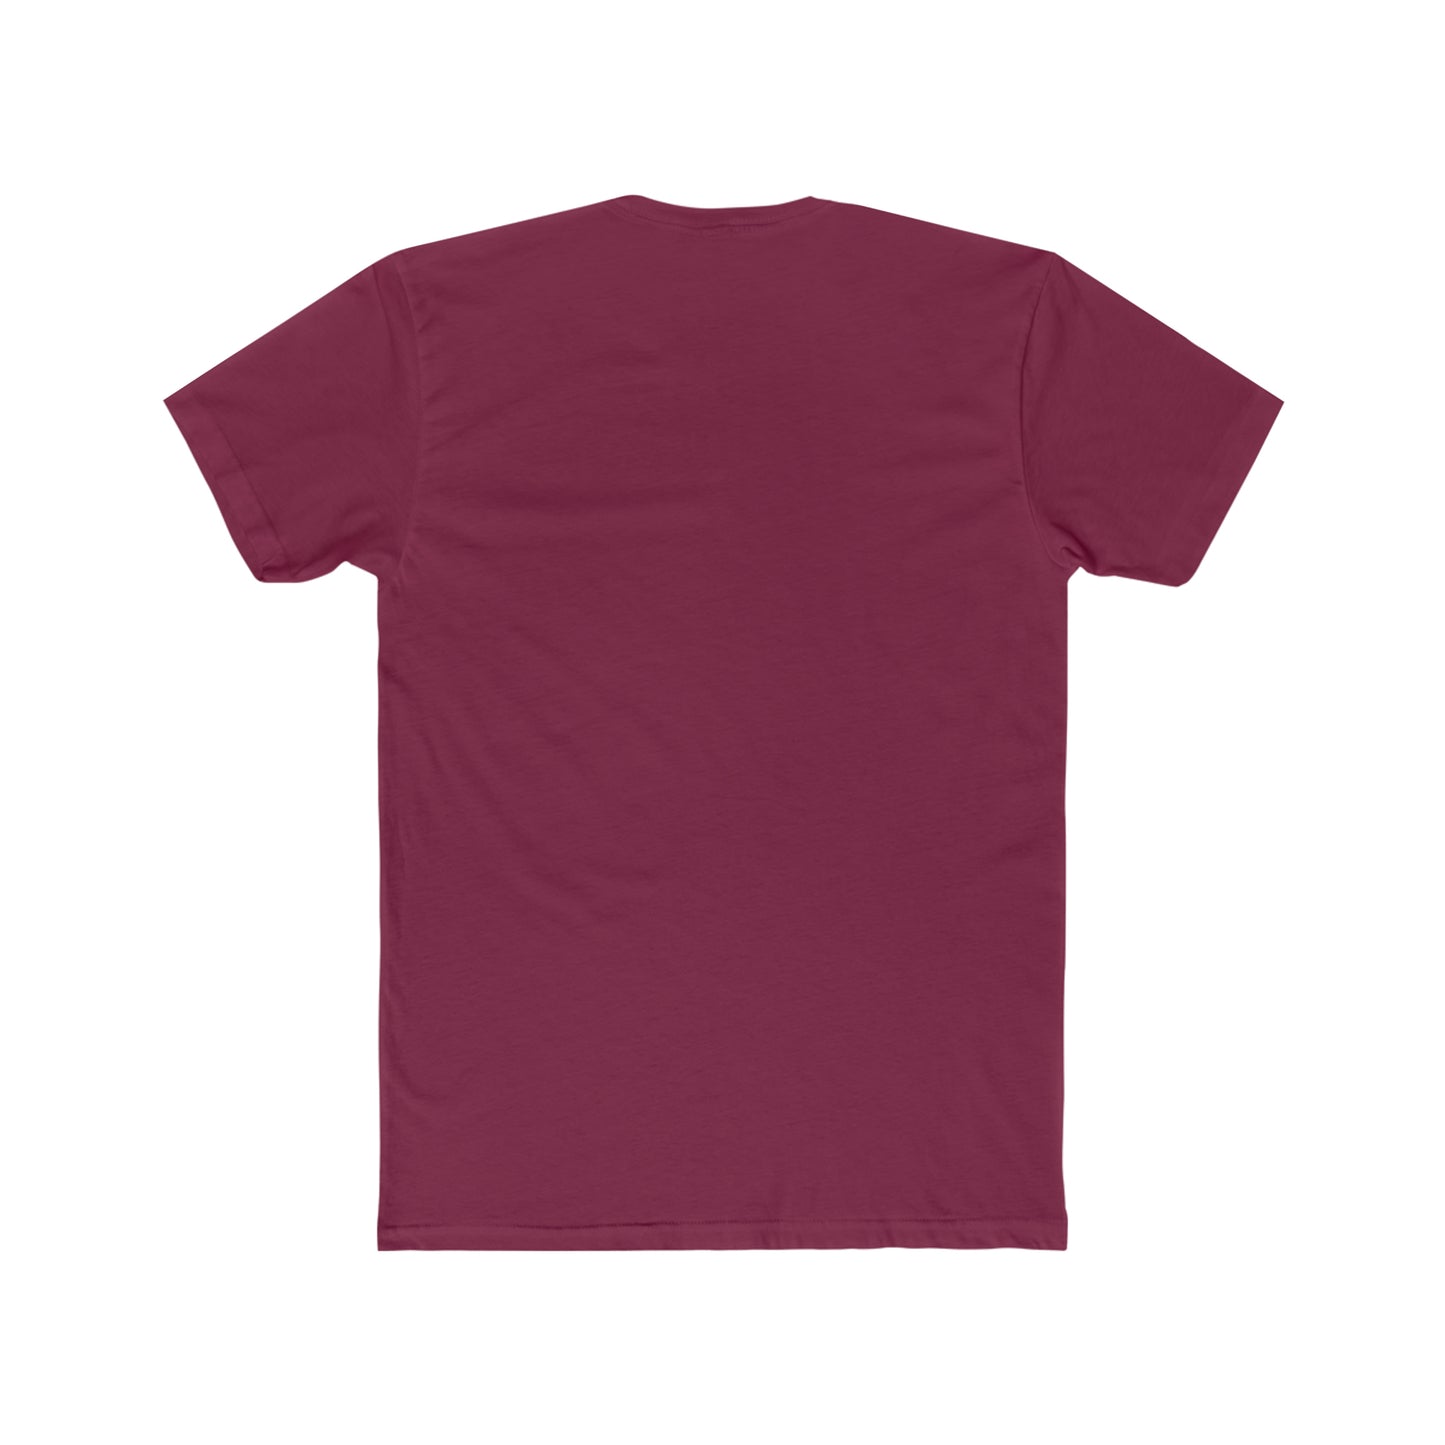 Murcielago Minimalista - Camiseta de algodón para hombre